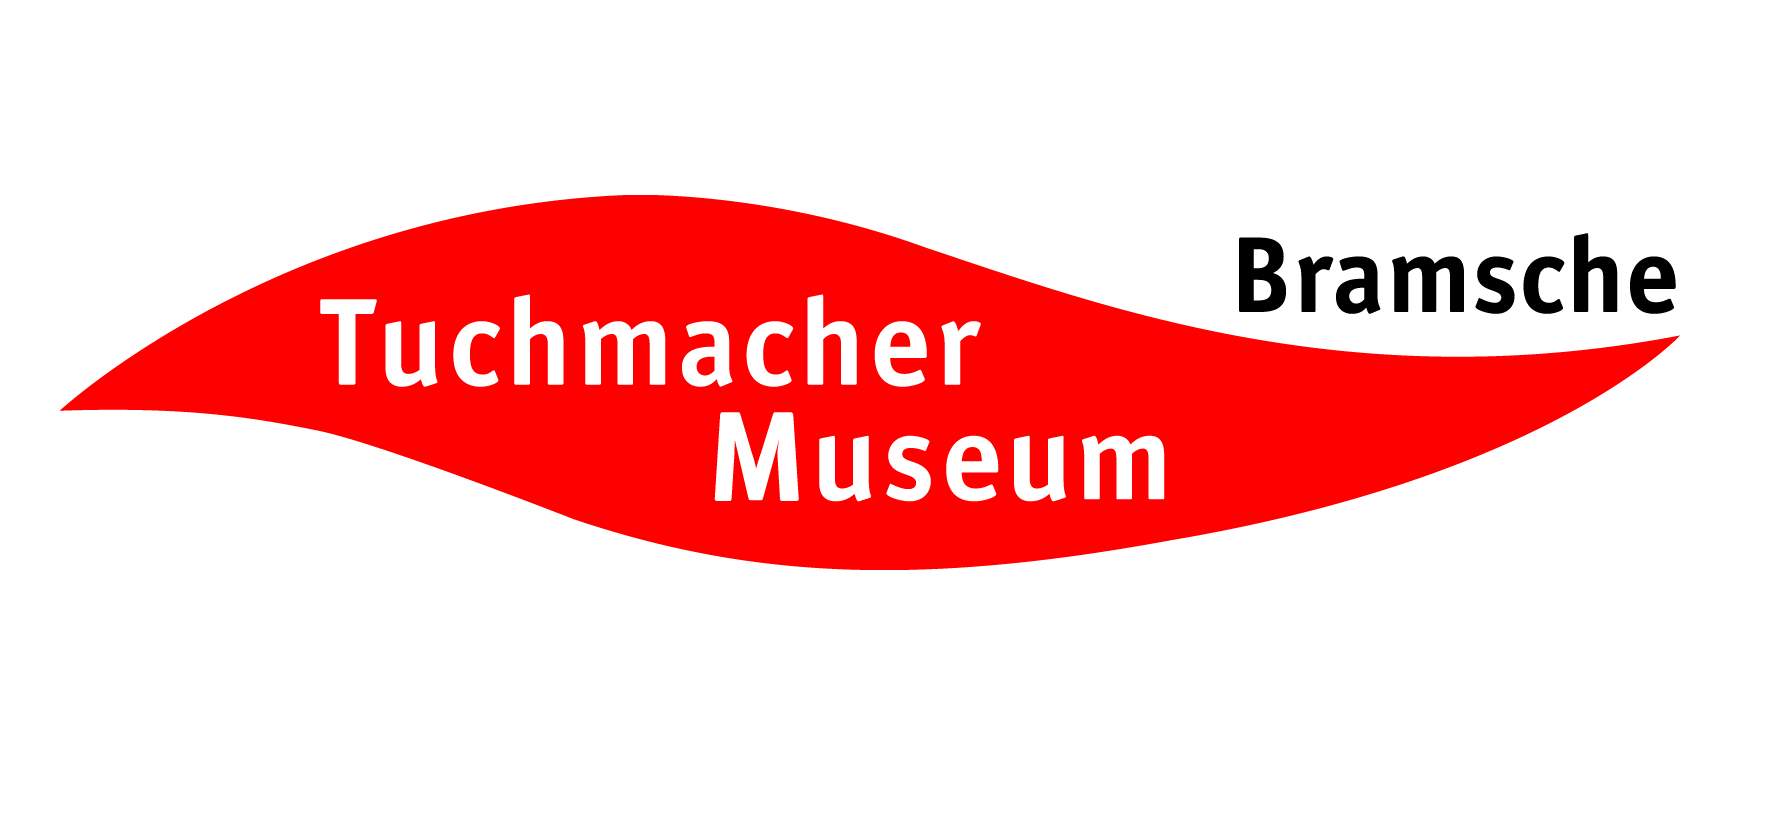 Logo Tuchmacher Museum Bramsche